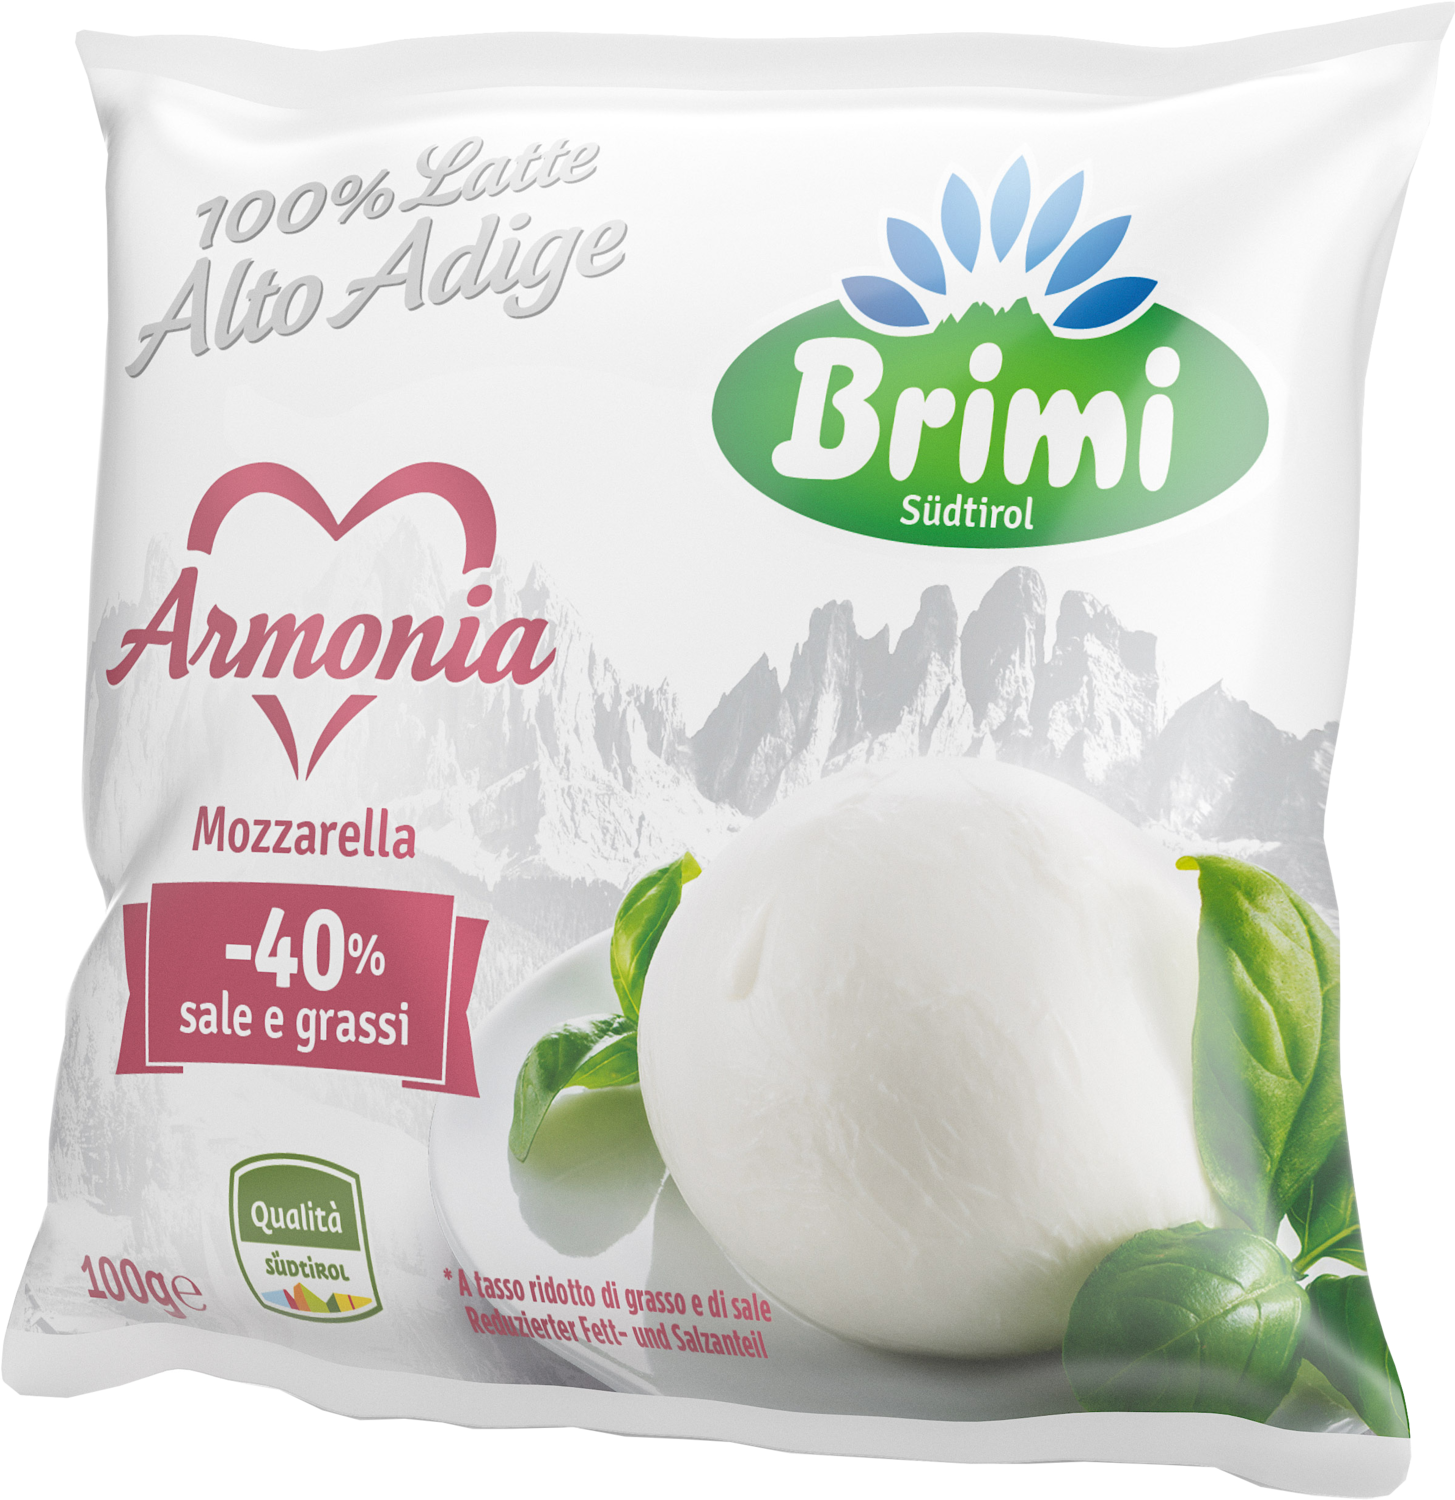 Brimi presenta la nuova mozzarella Armonia 